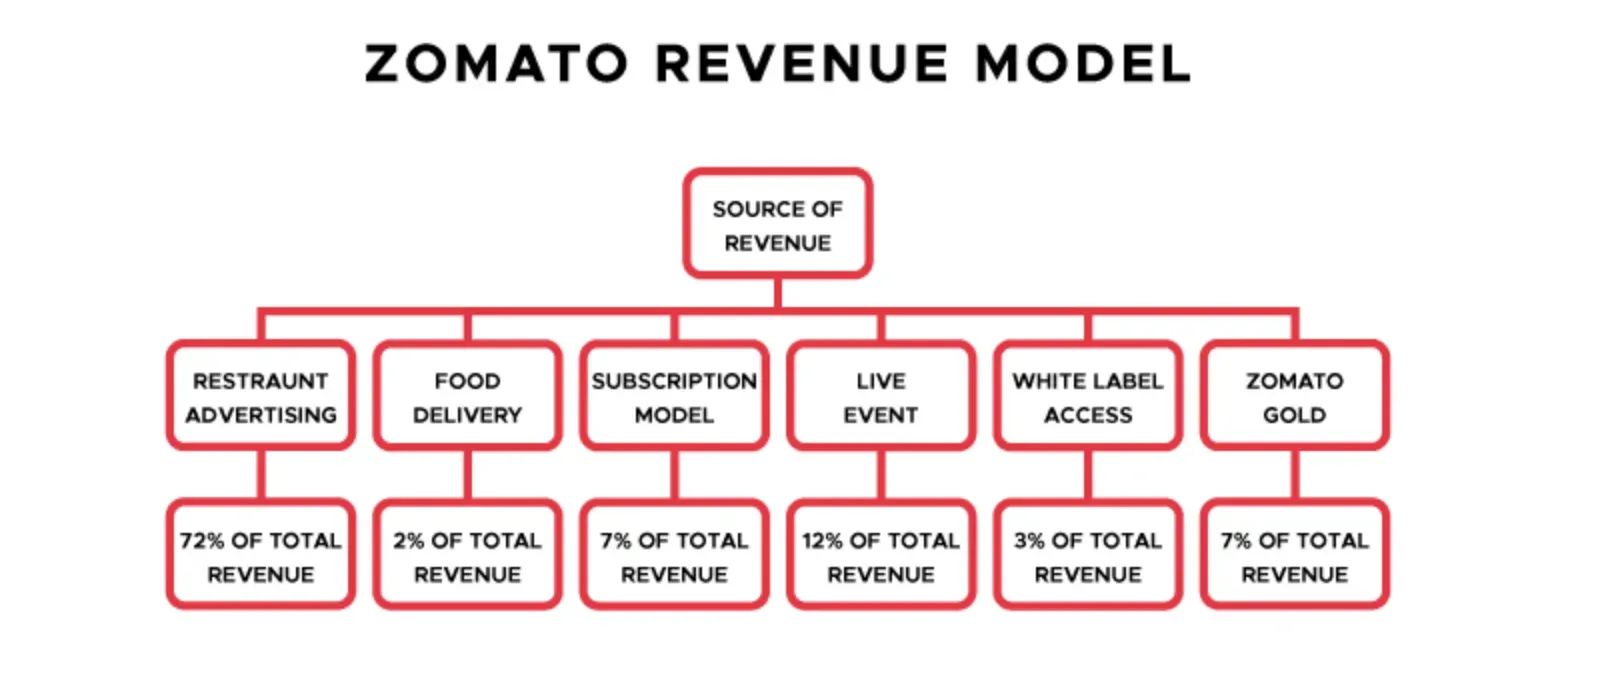 Zomato's Revenue Model